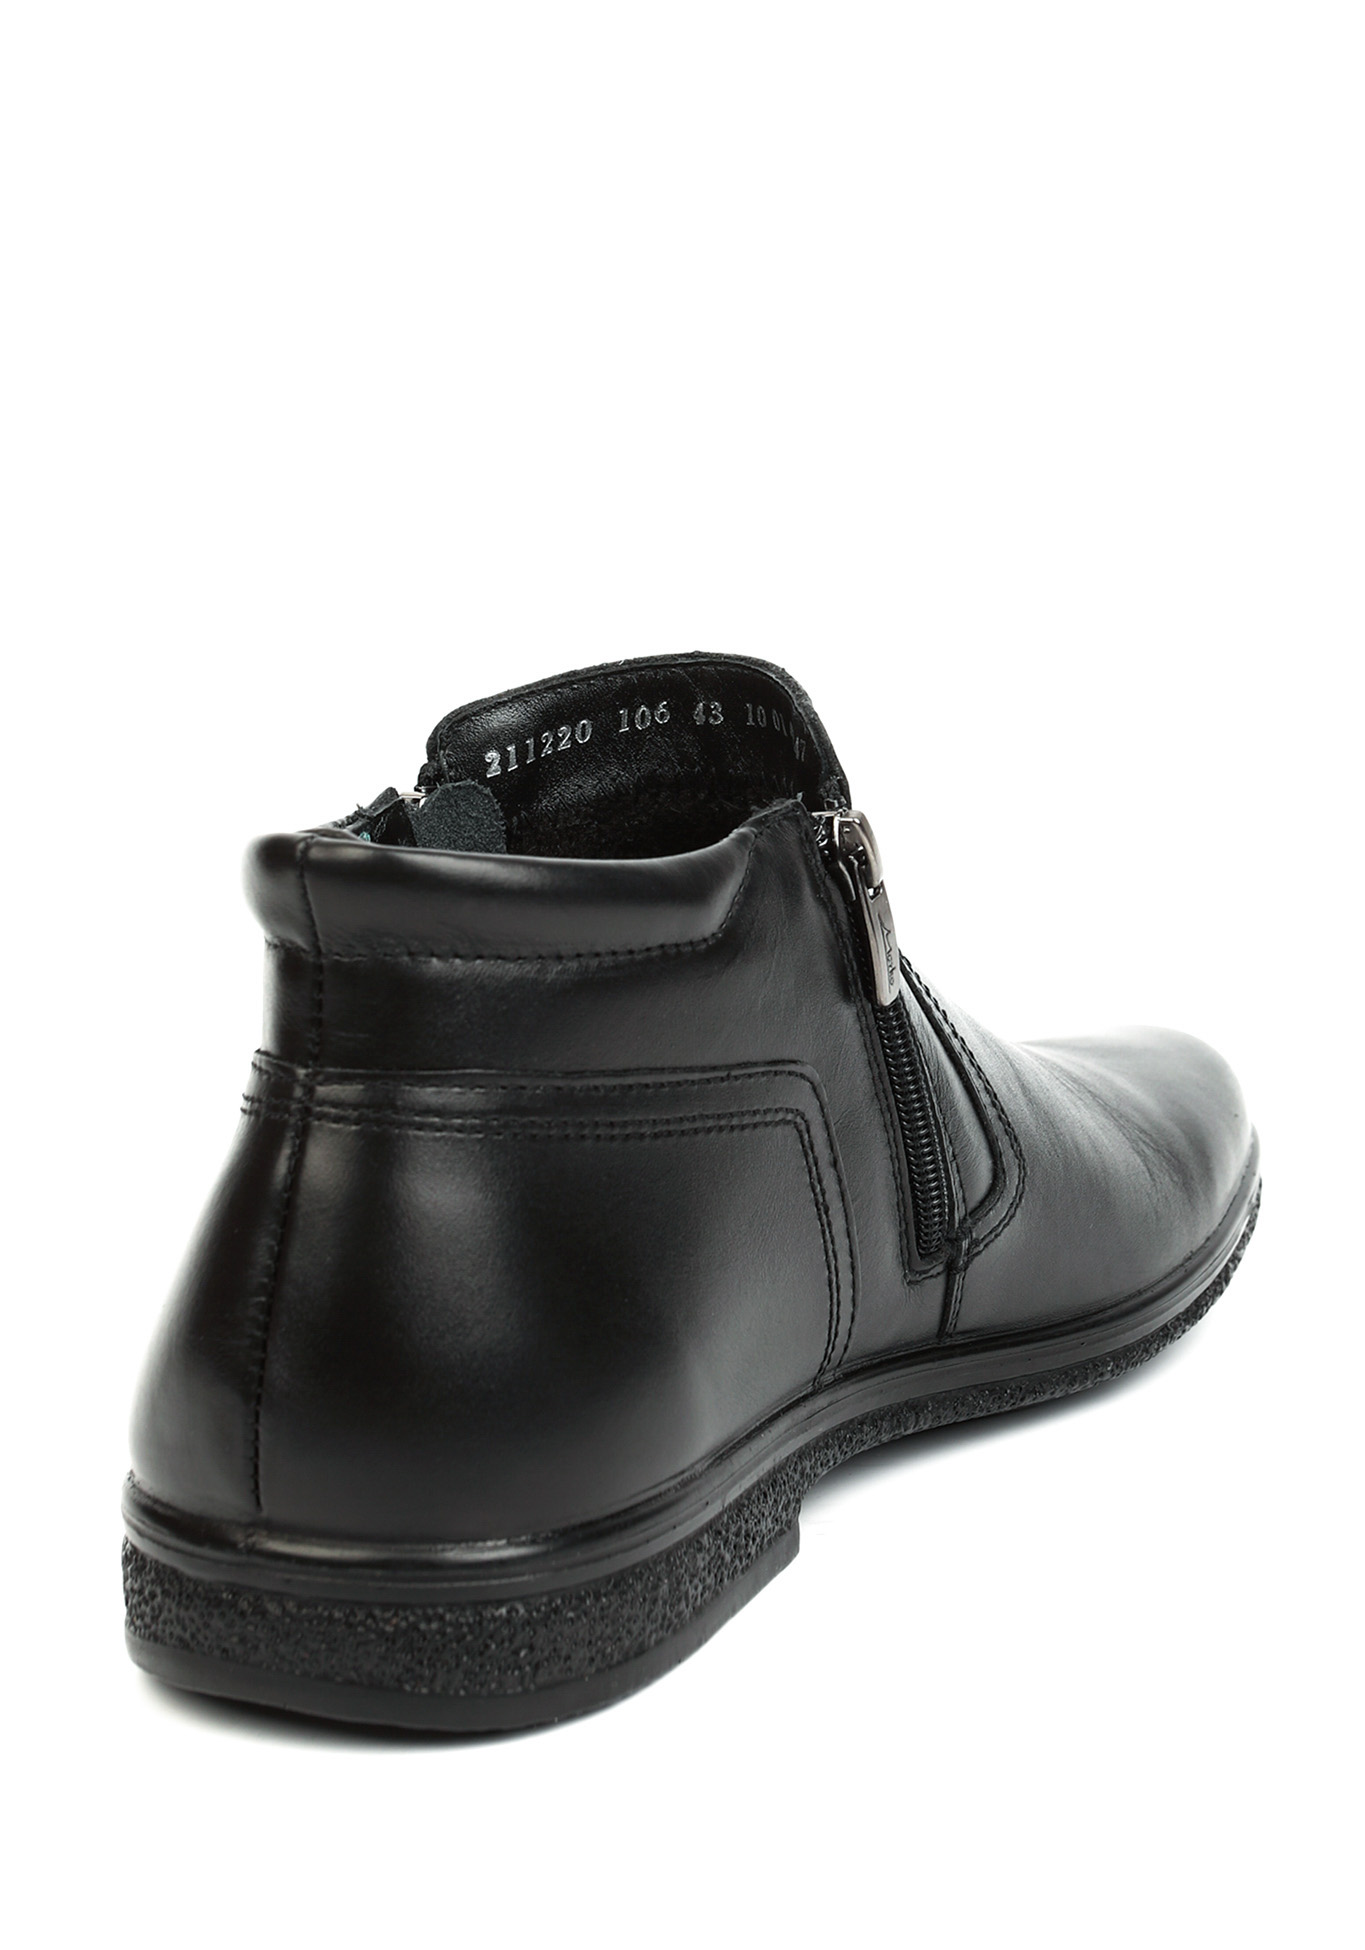 Ботинки мужские "Стеффан" Marko, размер 40, цвет черный - фото 3